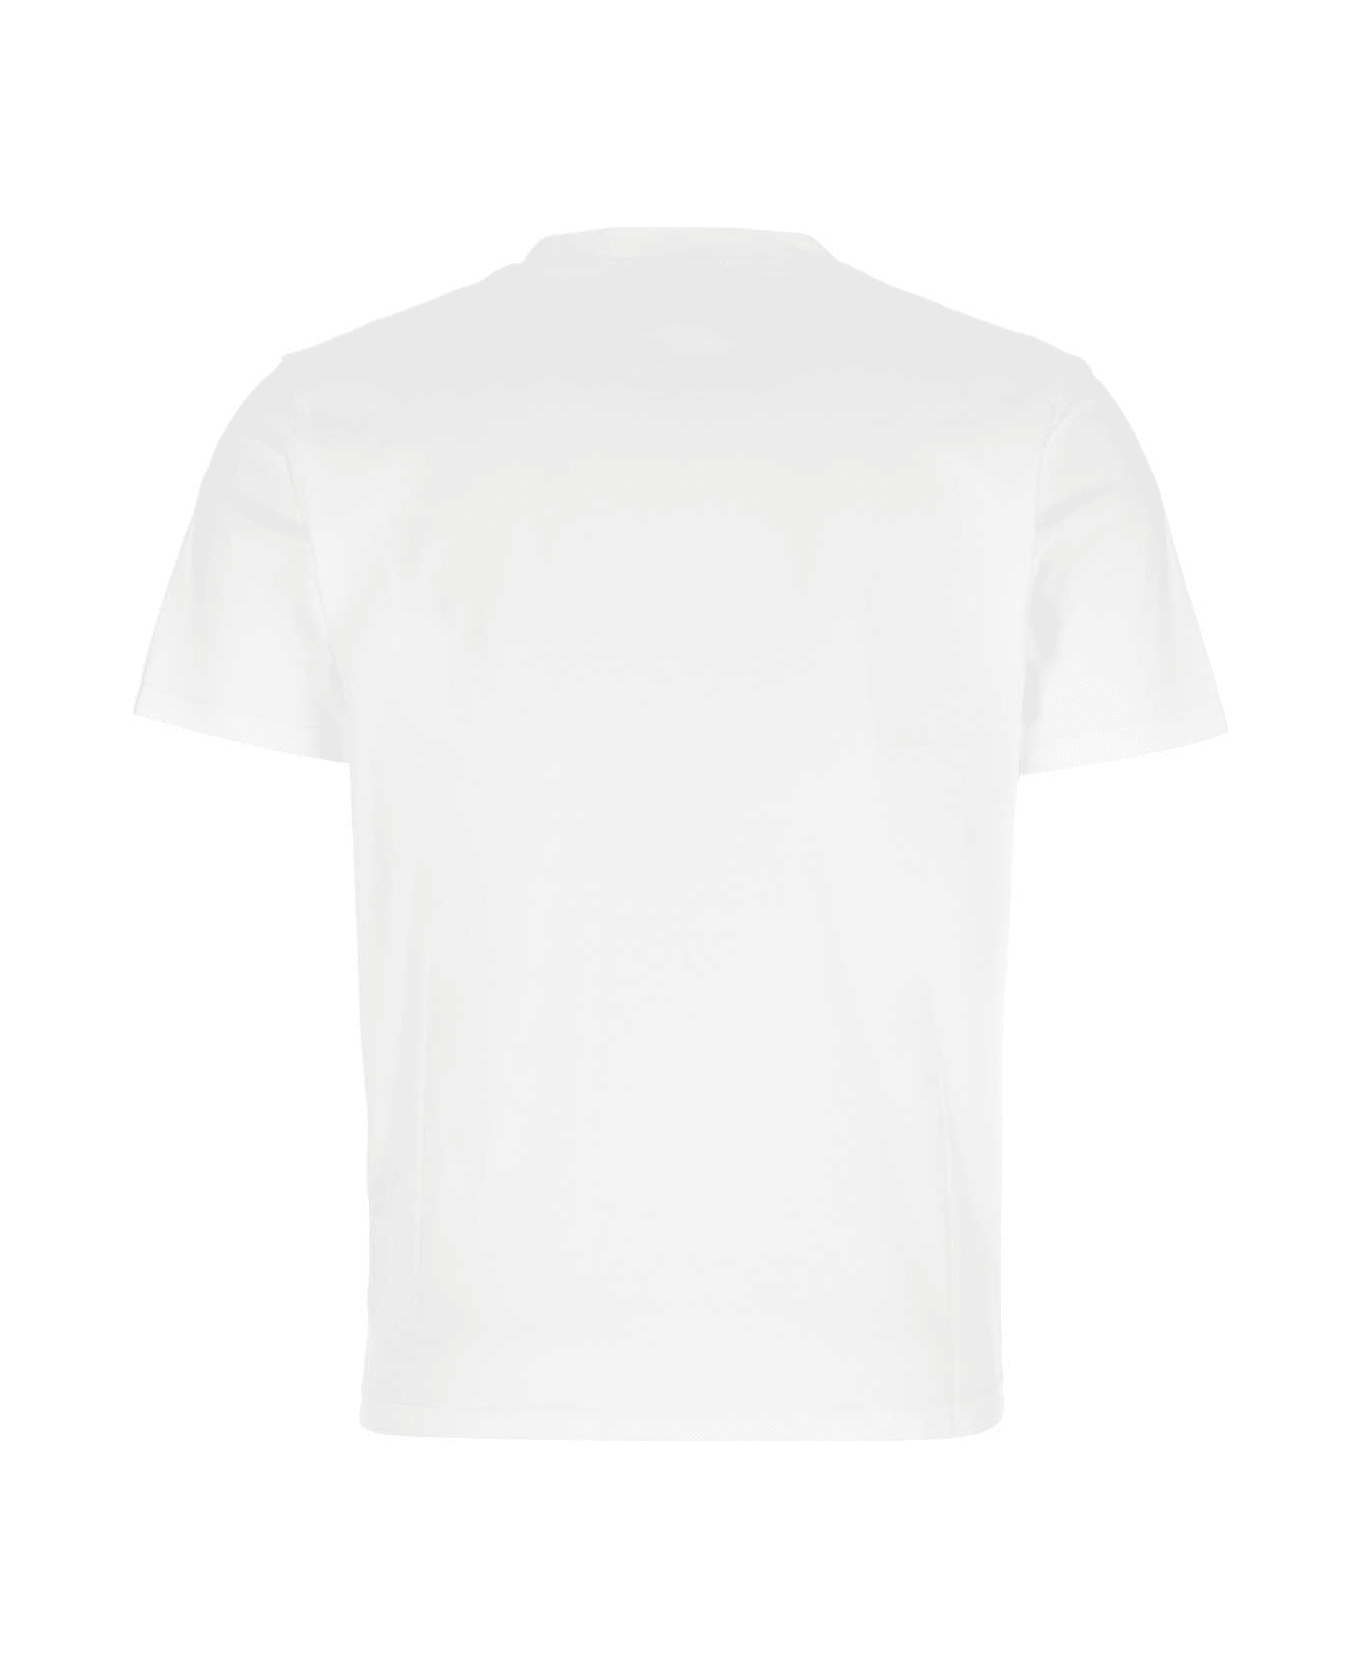 Maison Labiche White Cotton T-shirt - WHITE